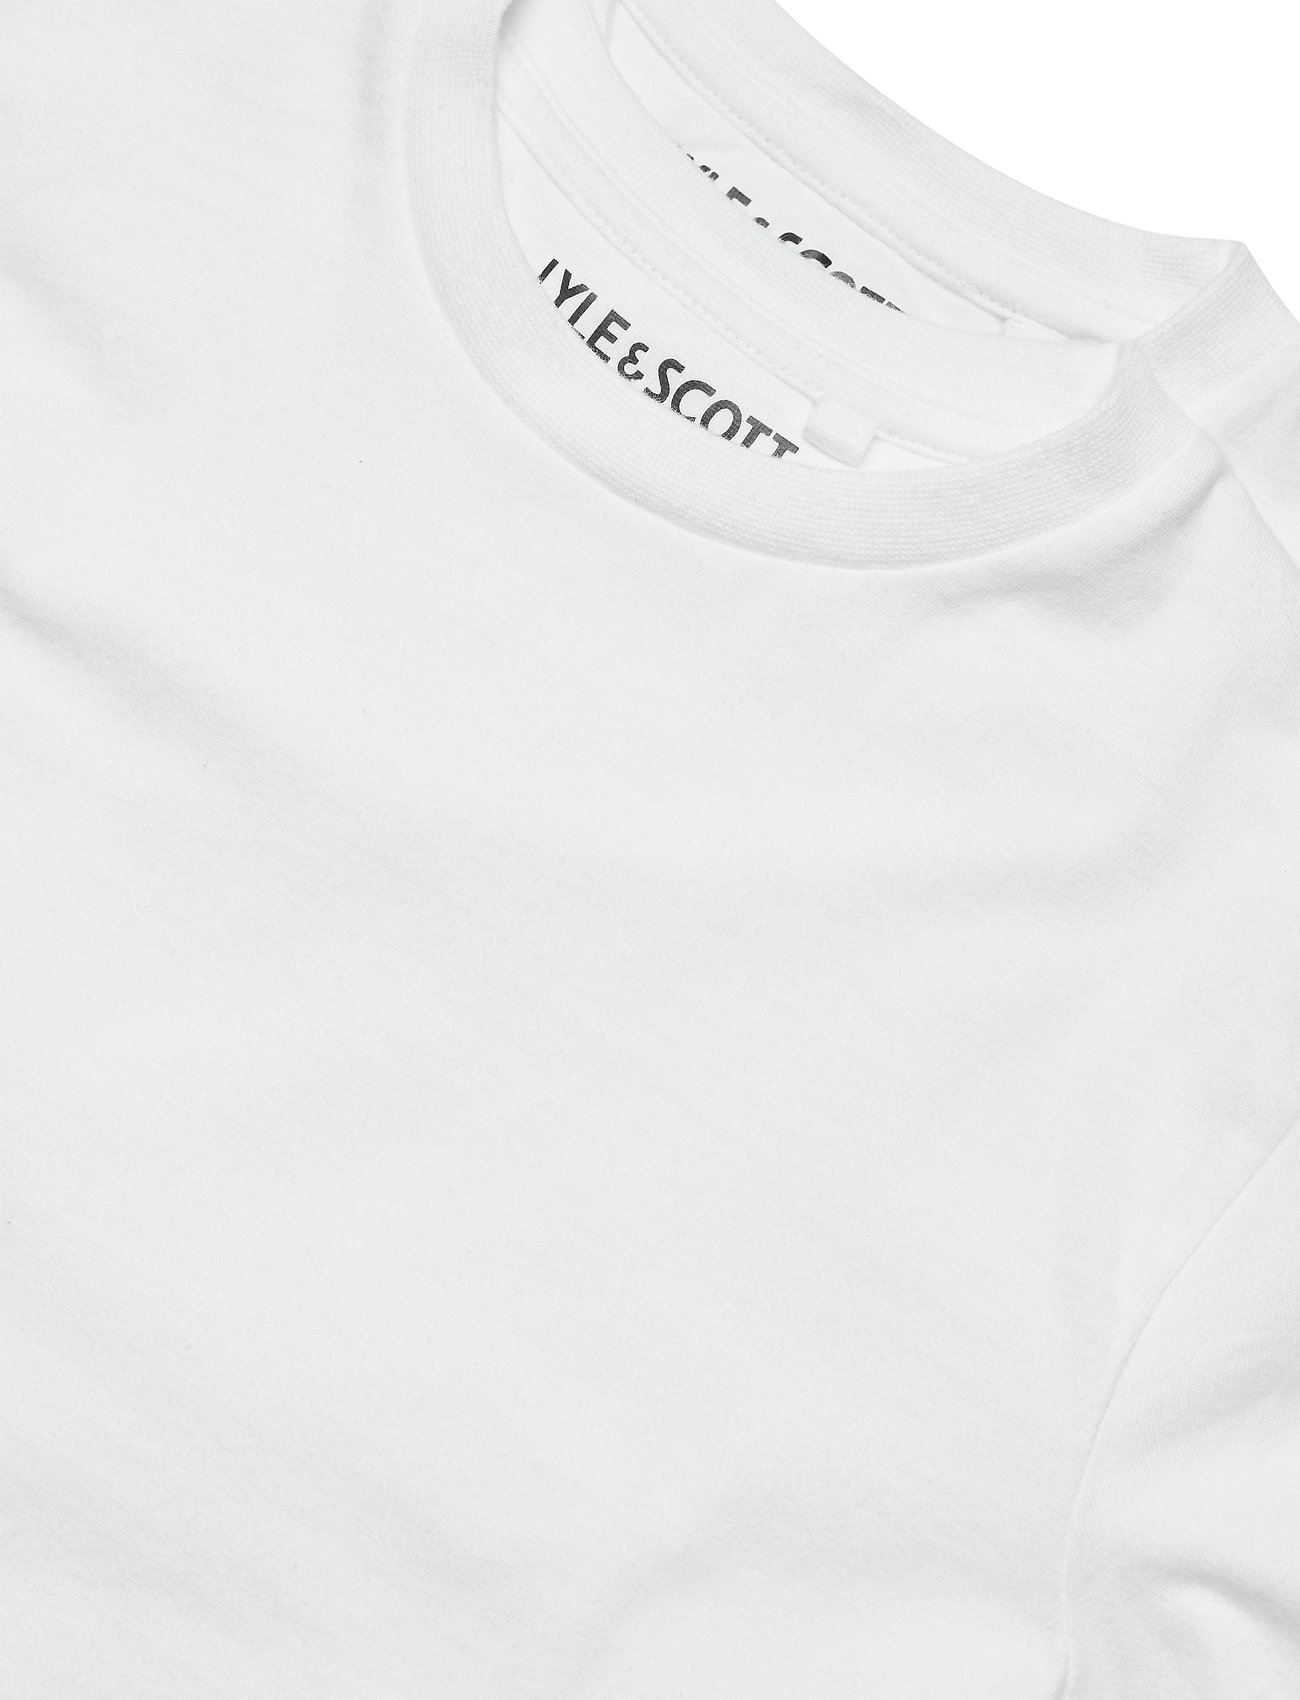 Lyle & Scott Junior - 2 Pack Lounge T Shirt - t-shirt uni à manches courtes - bright white - 1